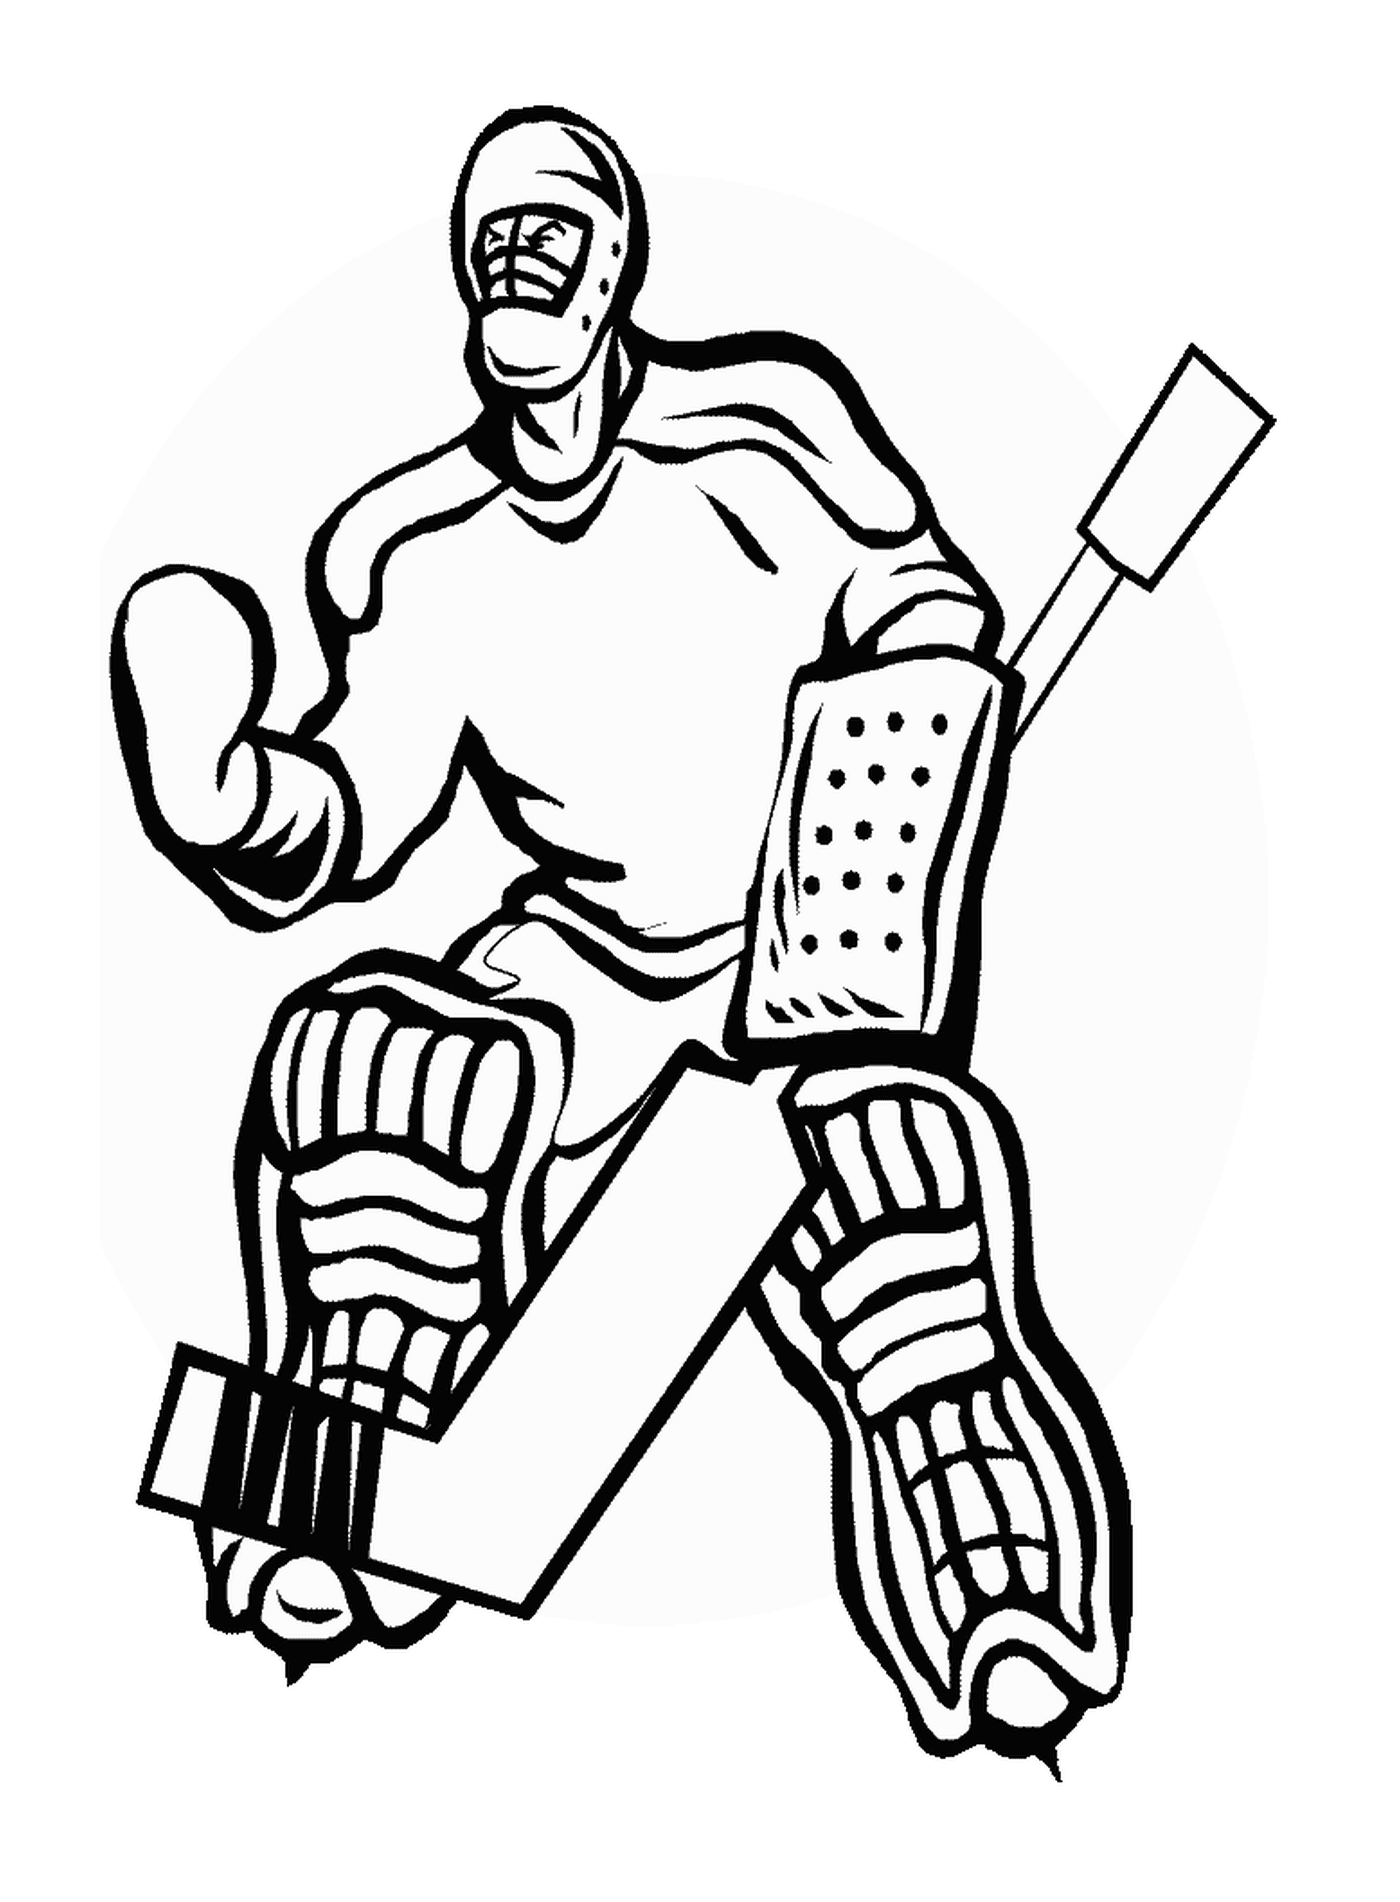  Странный хоккейный охранник 